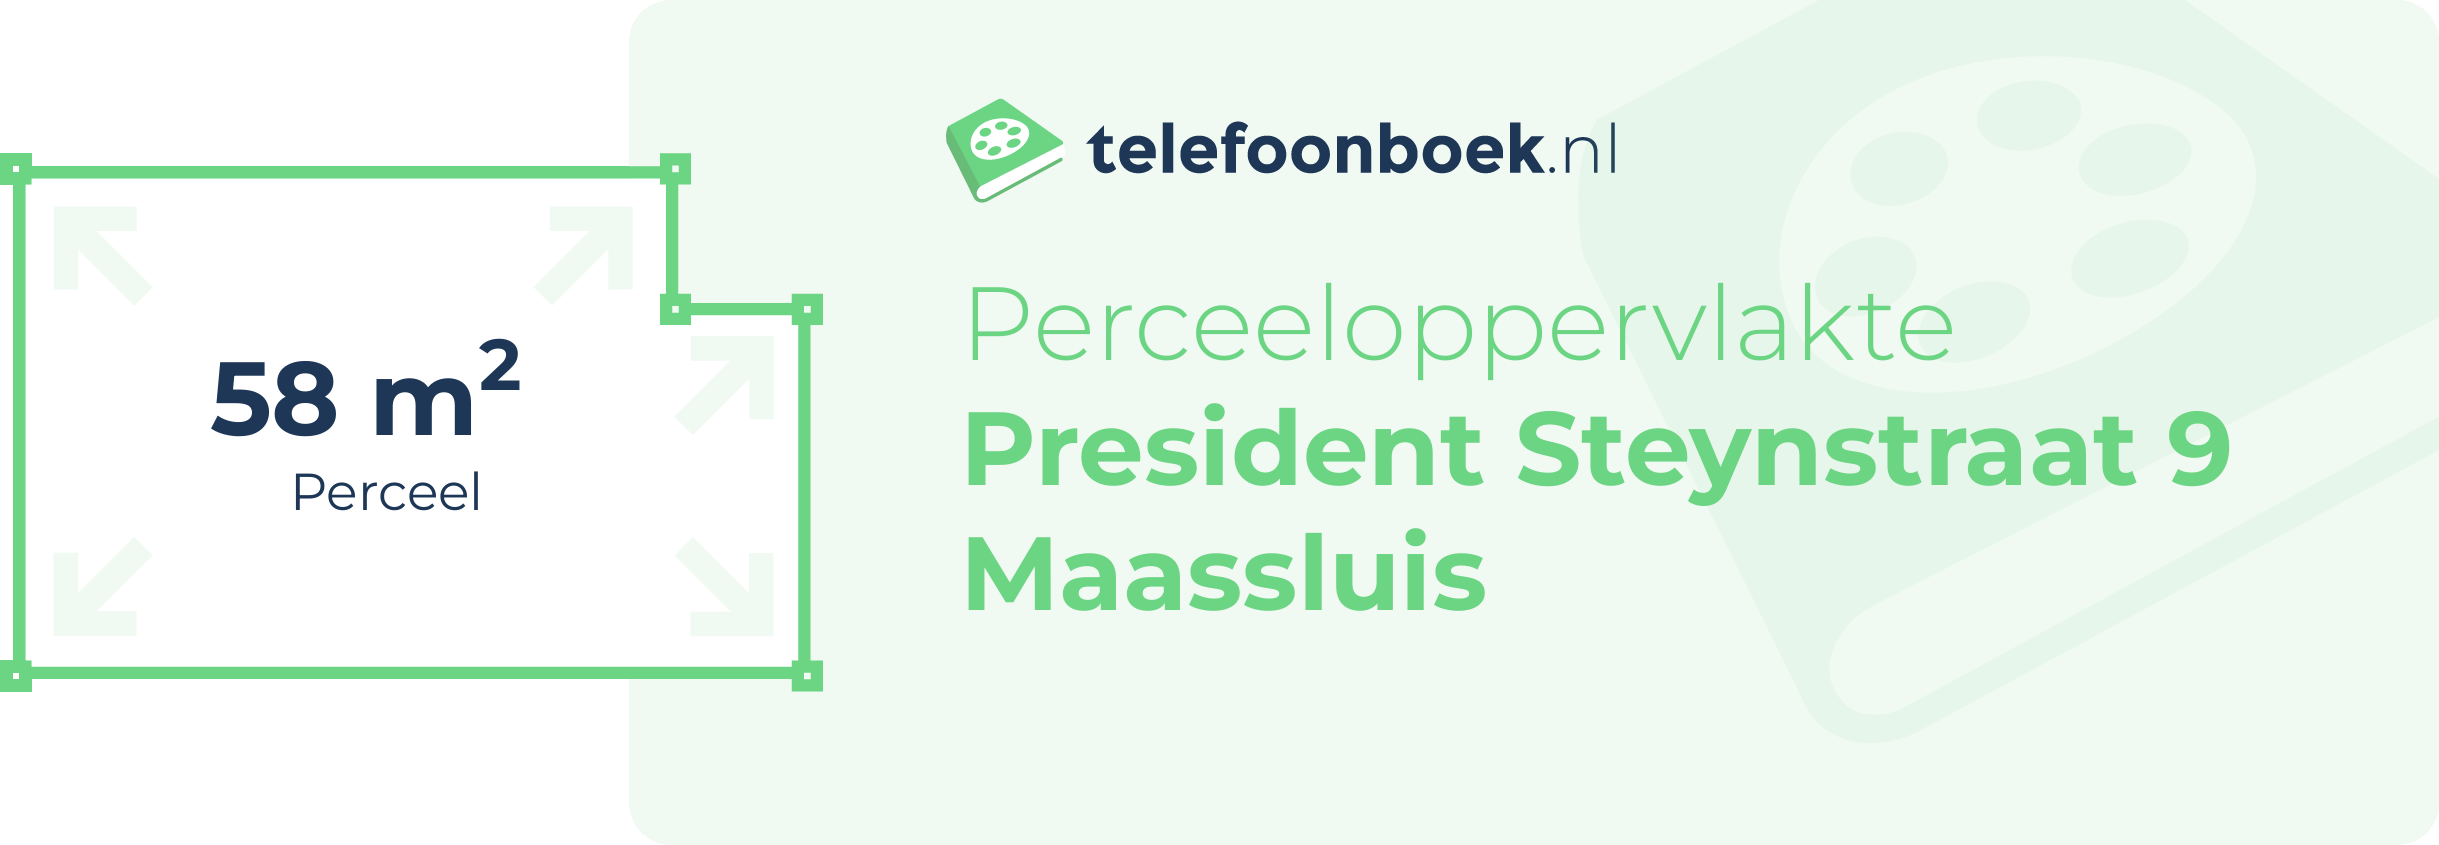 Perceeloppervlakte President Steynstraat 9 Maassluis